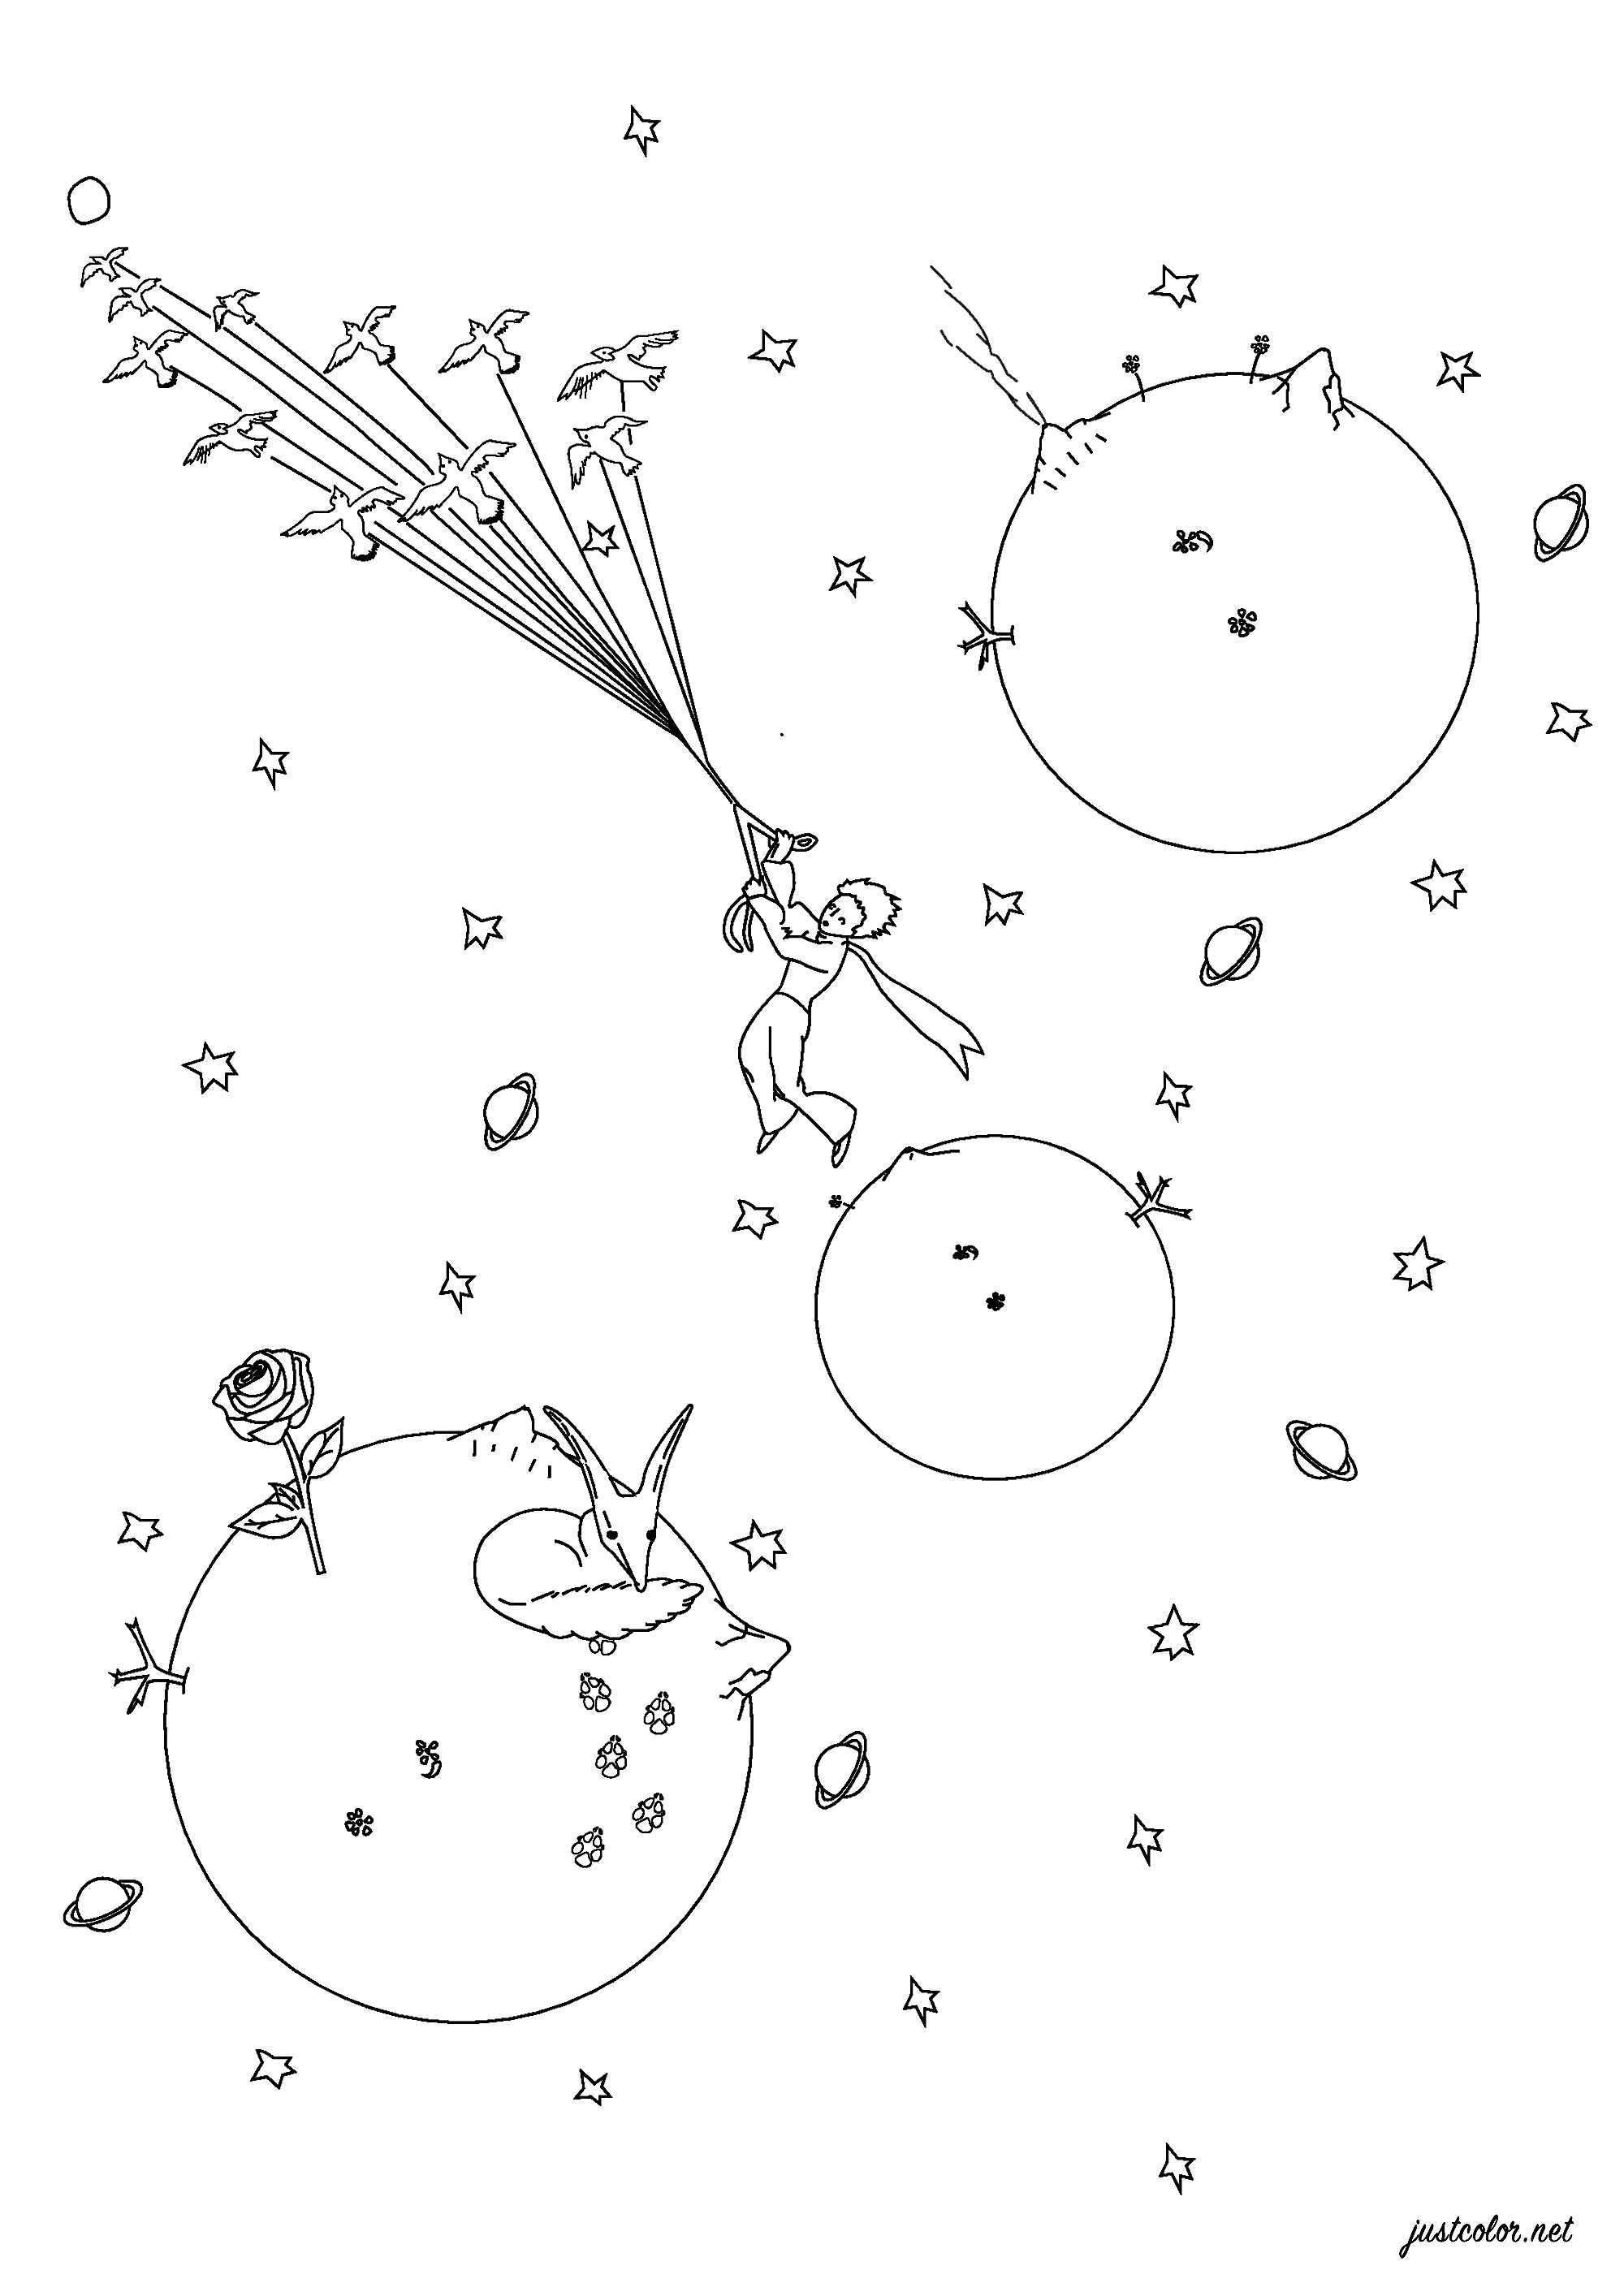 Pagina da colorare ispirata a Il piccolo principe di Antoine de Saint-Exupéry. Pubblicato per la prima volta nel 1943, Il Piccolo Principe è un racconto poetico, con illustrazioni ad acquerello dell'autore, in cui un pilota bloccato nel deserto incontra un giovane principe in visita sulla Terra da un piccolo asteroide.